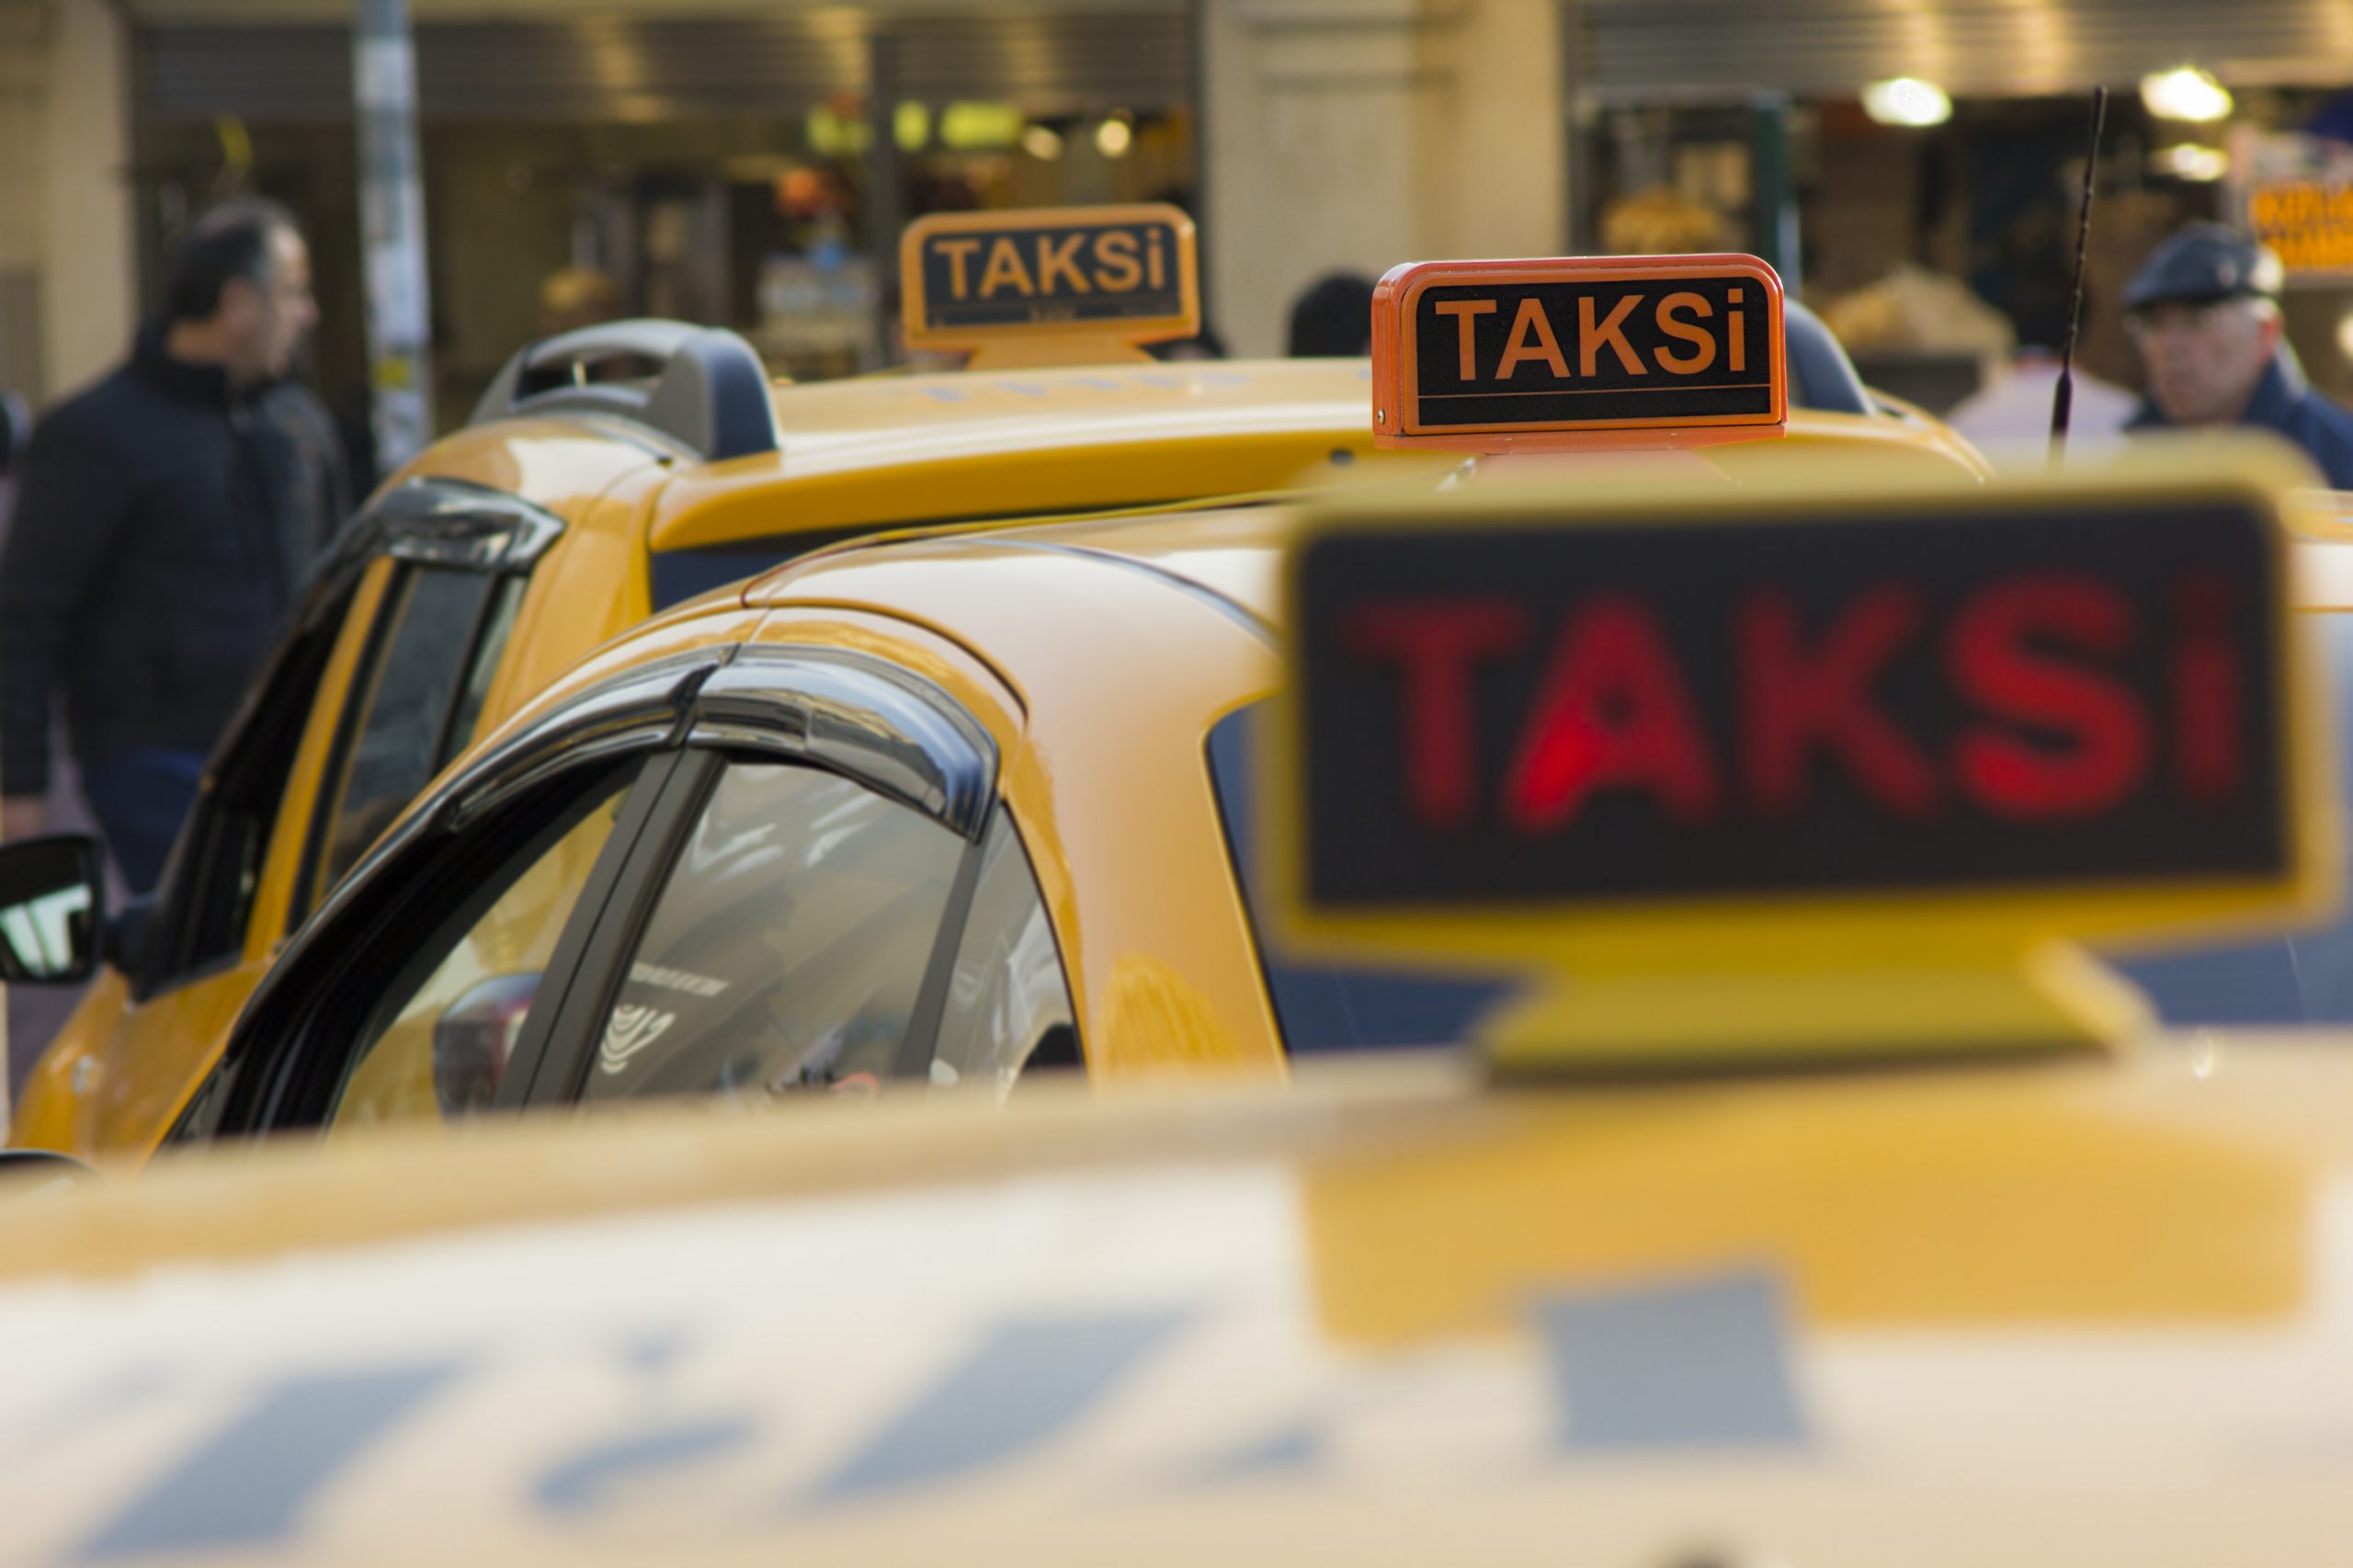 ticari taksi plaka fiyatları